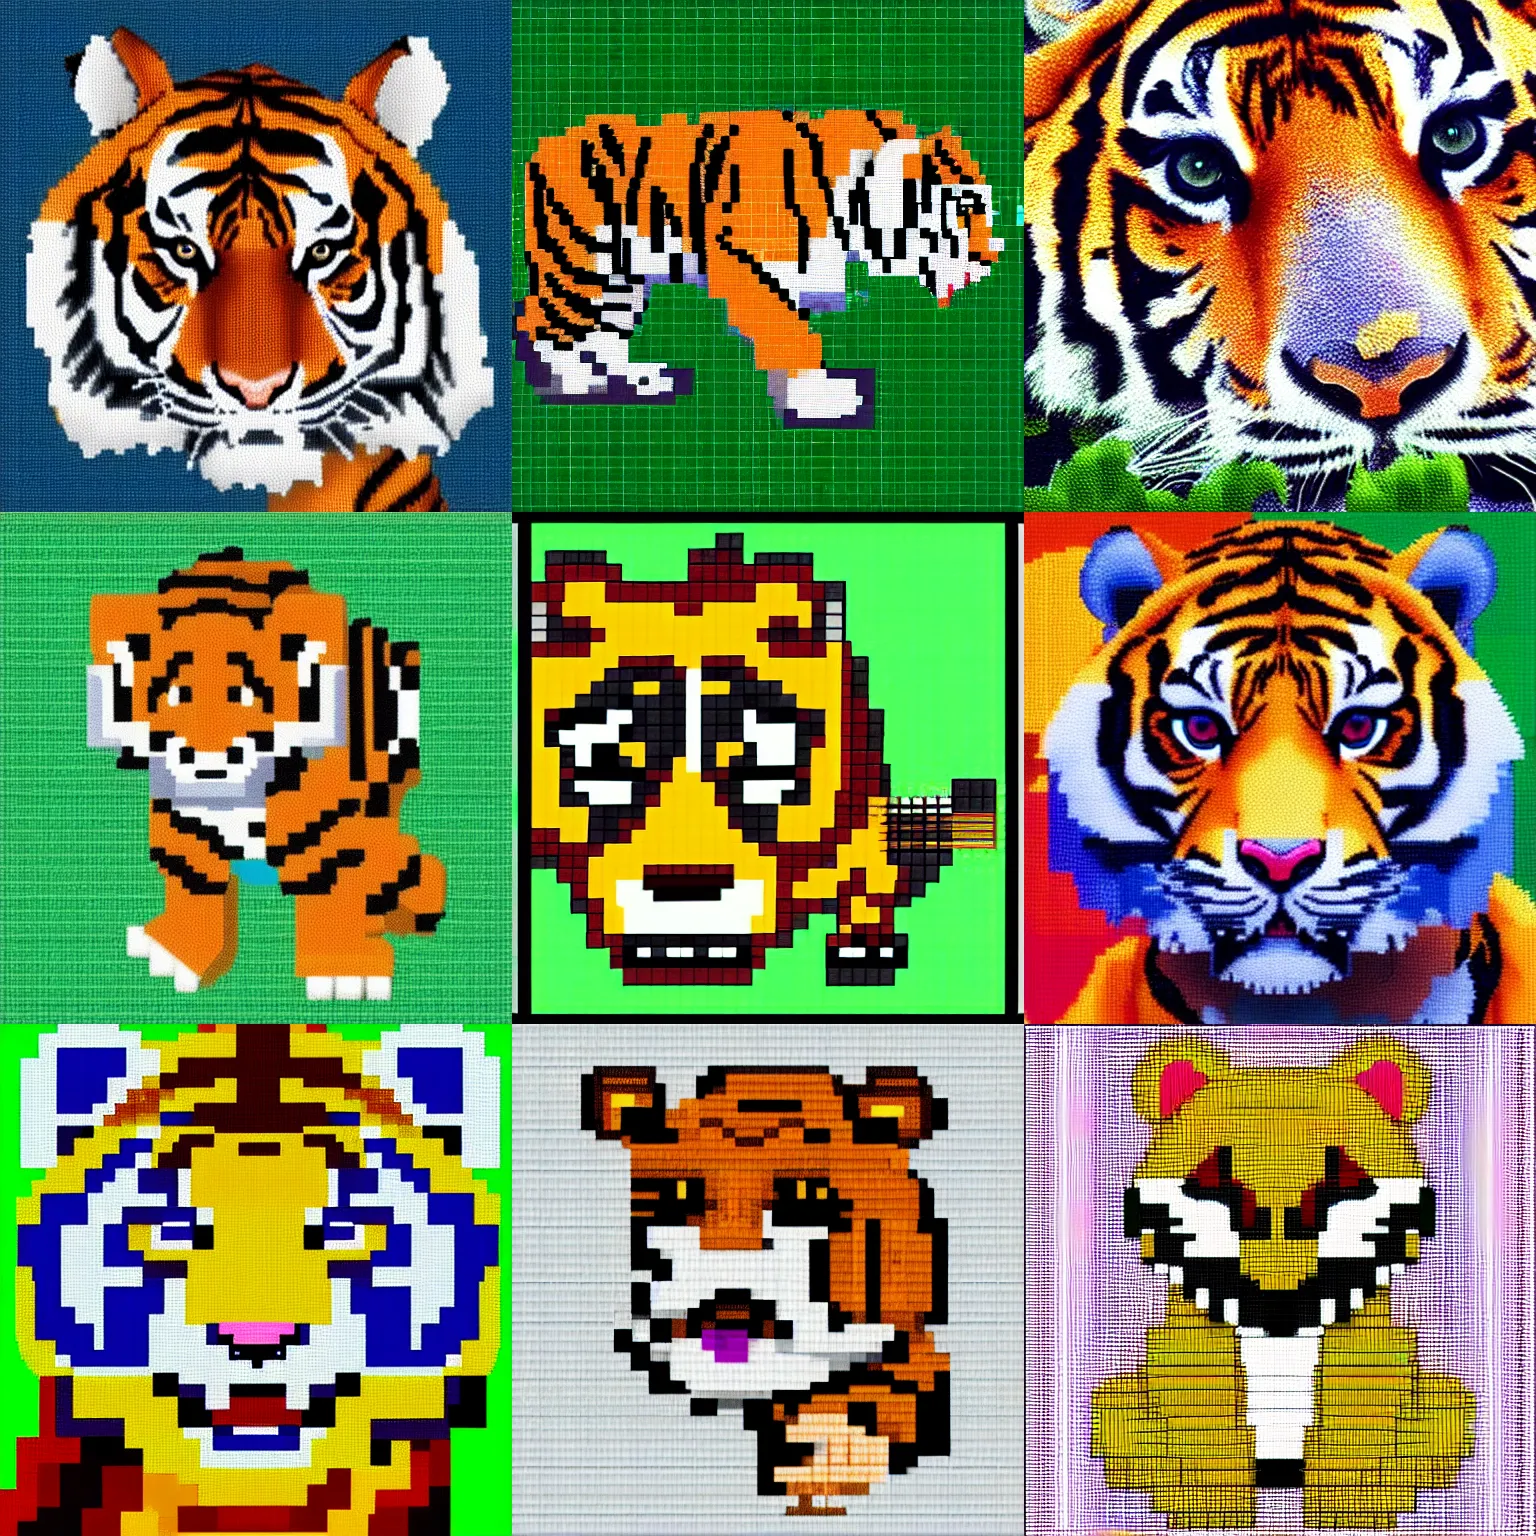 Prompt: a cute tiger, 3 2 bits pixel art